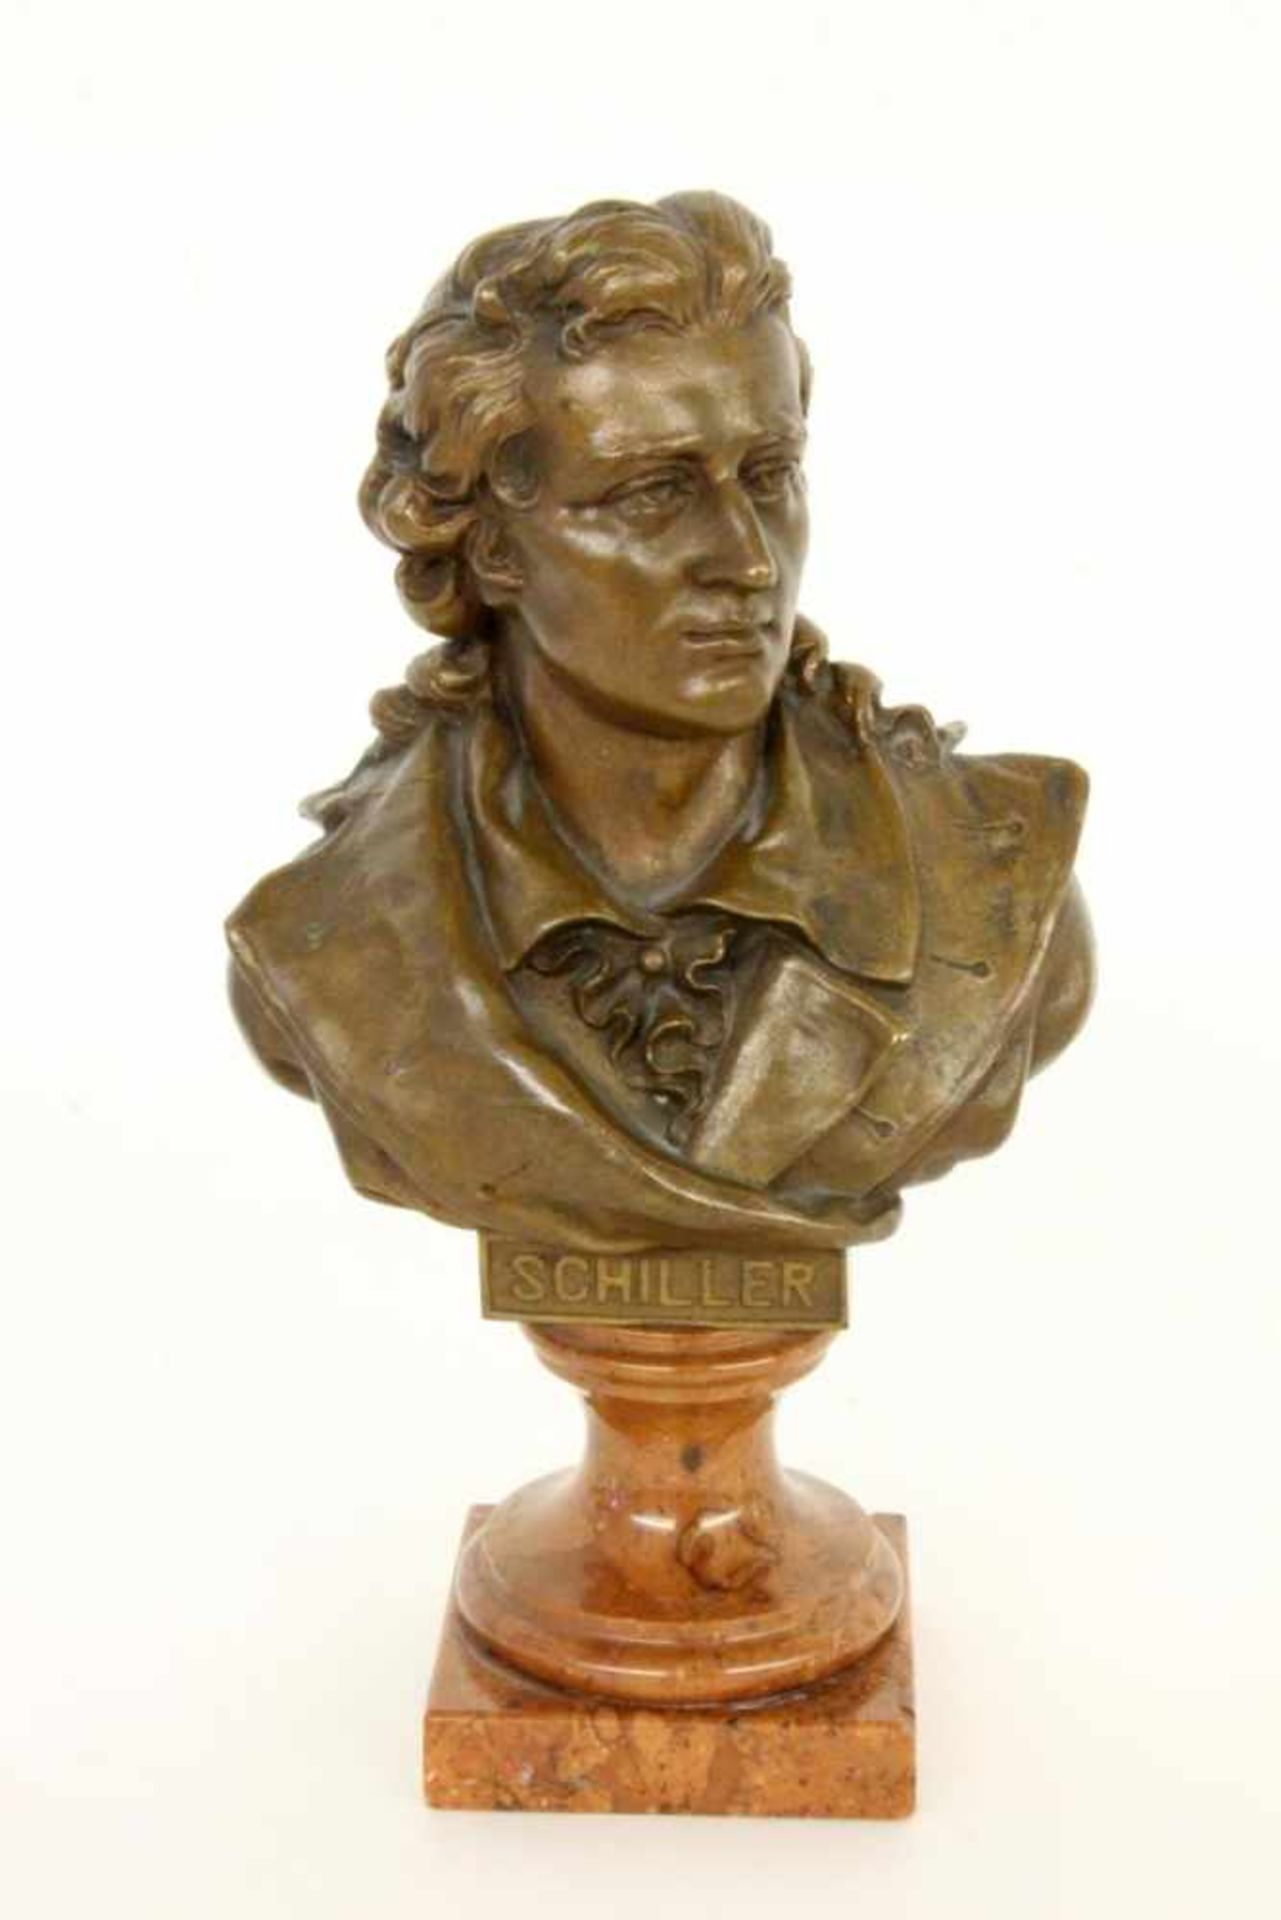 FRIEDRICH SCHILLERum 1900 Bronzebüste auf Marmorsockel. Nach Johann Heinrich Dannecker (1758-